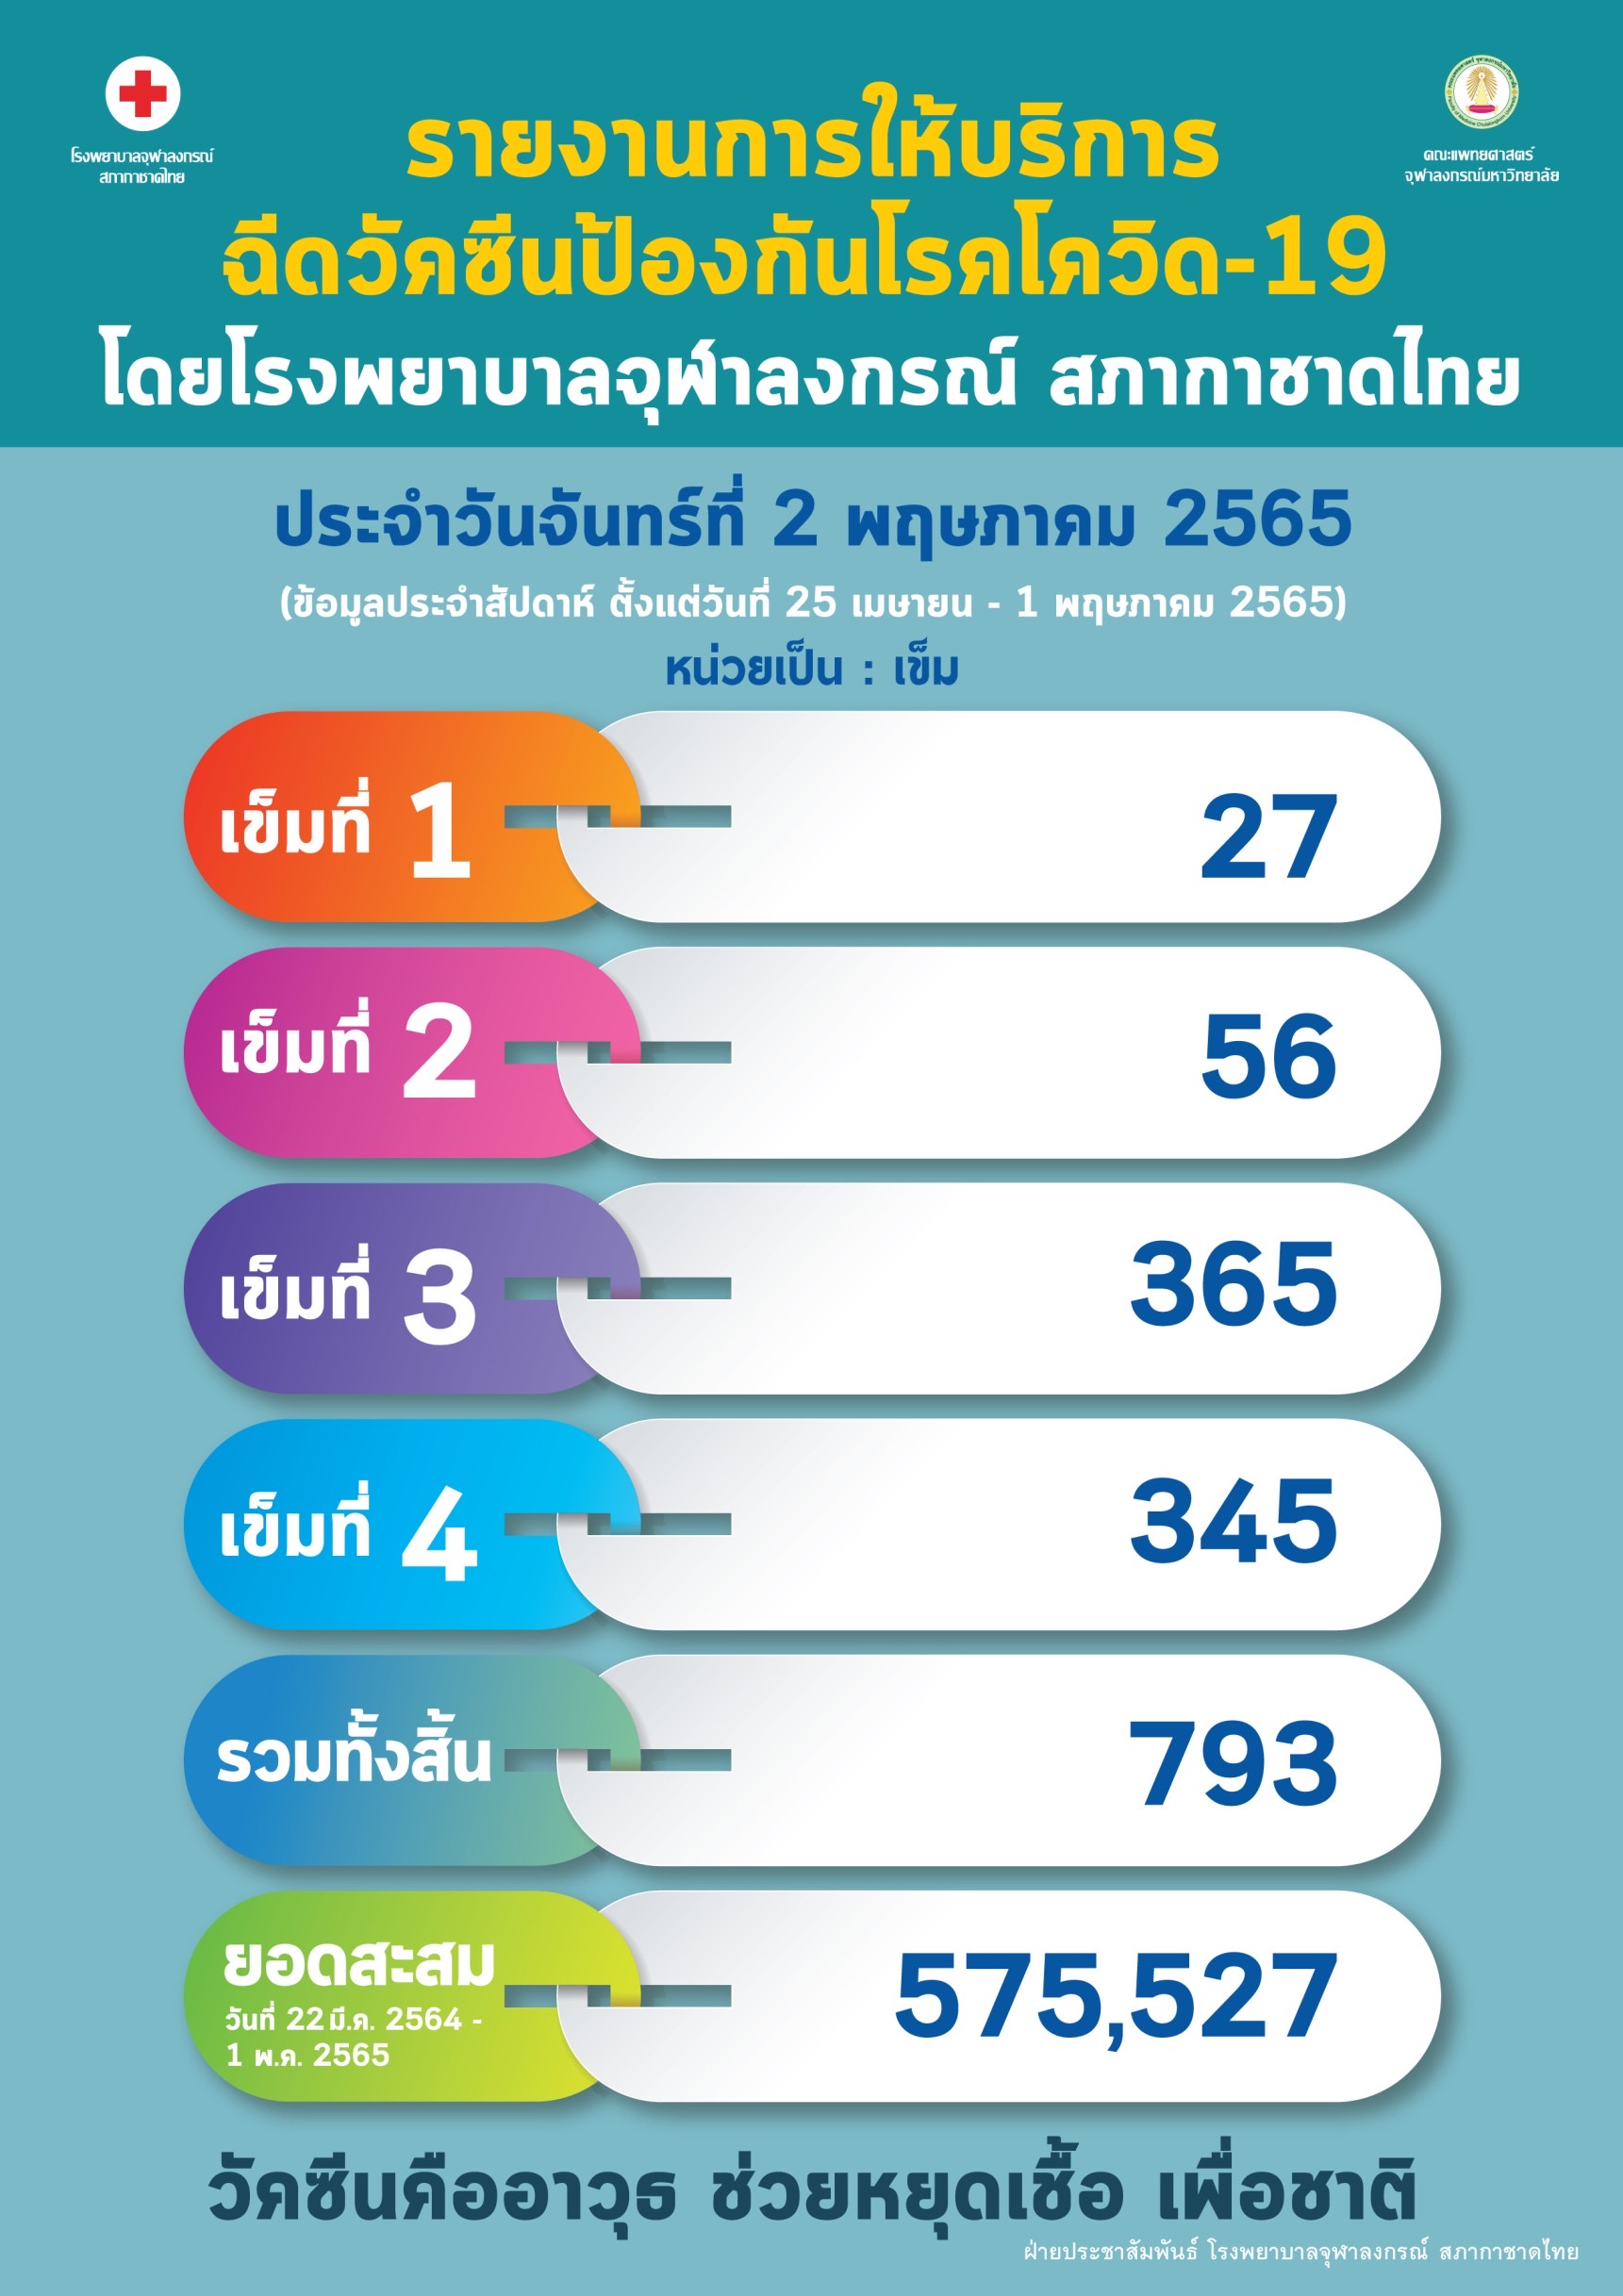 รายงานการให้บริการ ฉีดวัคซีนป้องกันโรคโควิด-19 โดยโรงพยาบาลจุฬาลงกรณ์ สภากาชาดไทย ประจำวันจันทร์ที่ 2 พฤษภาคม 2565